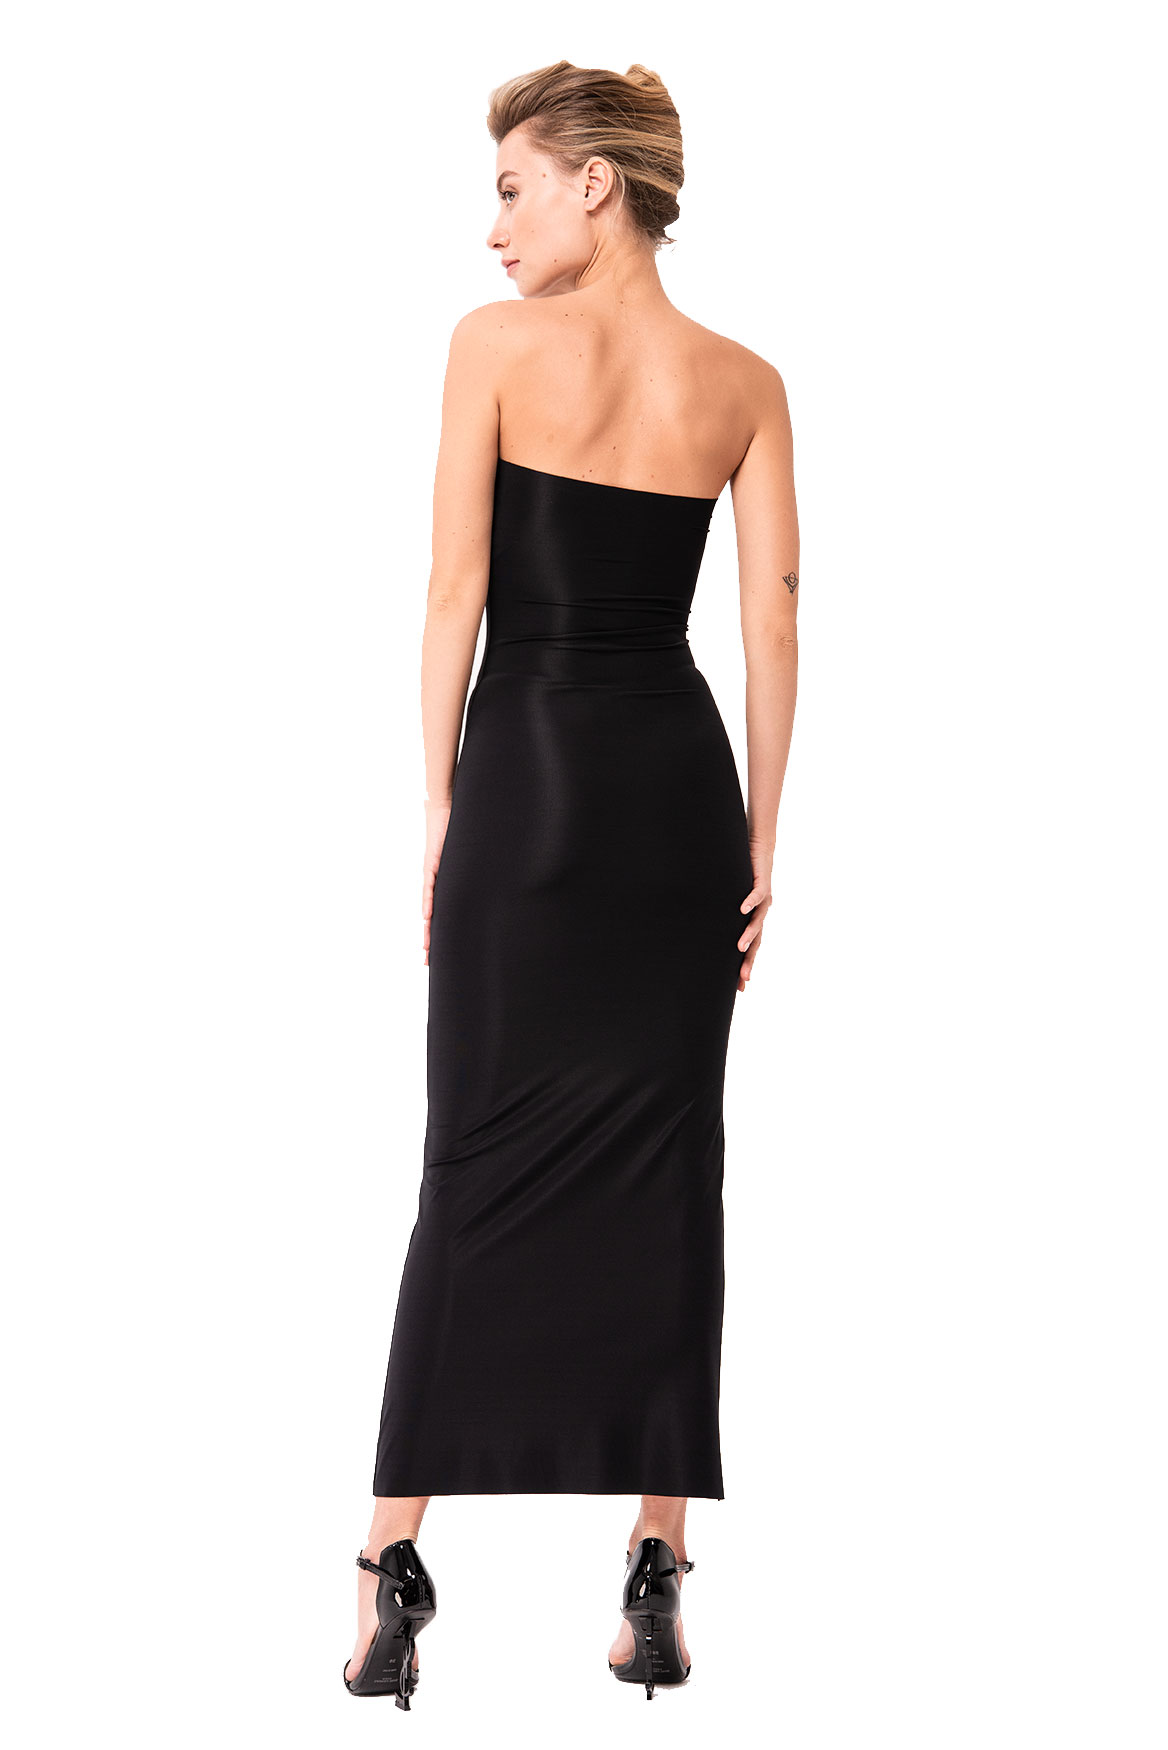 Strapless Long Cami Slip Black Dress